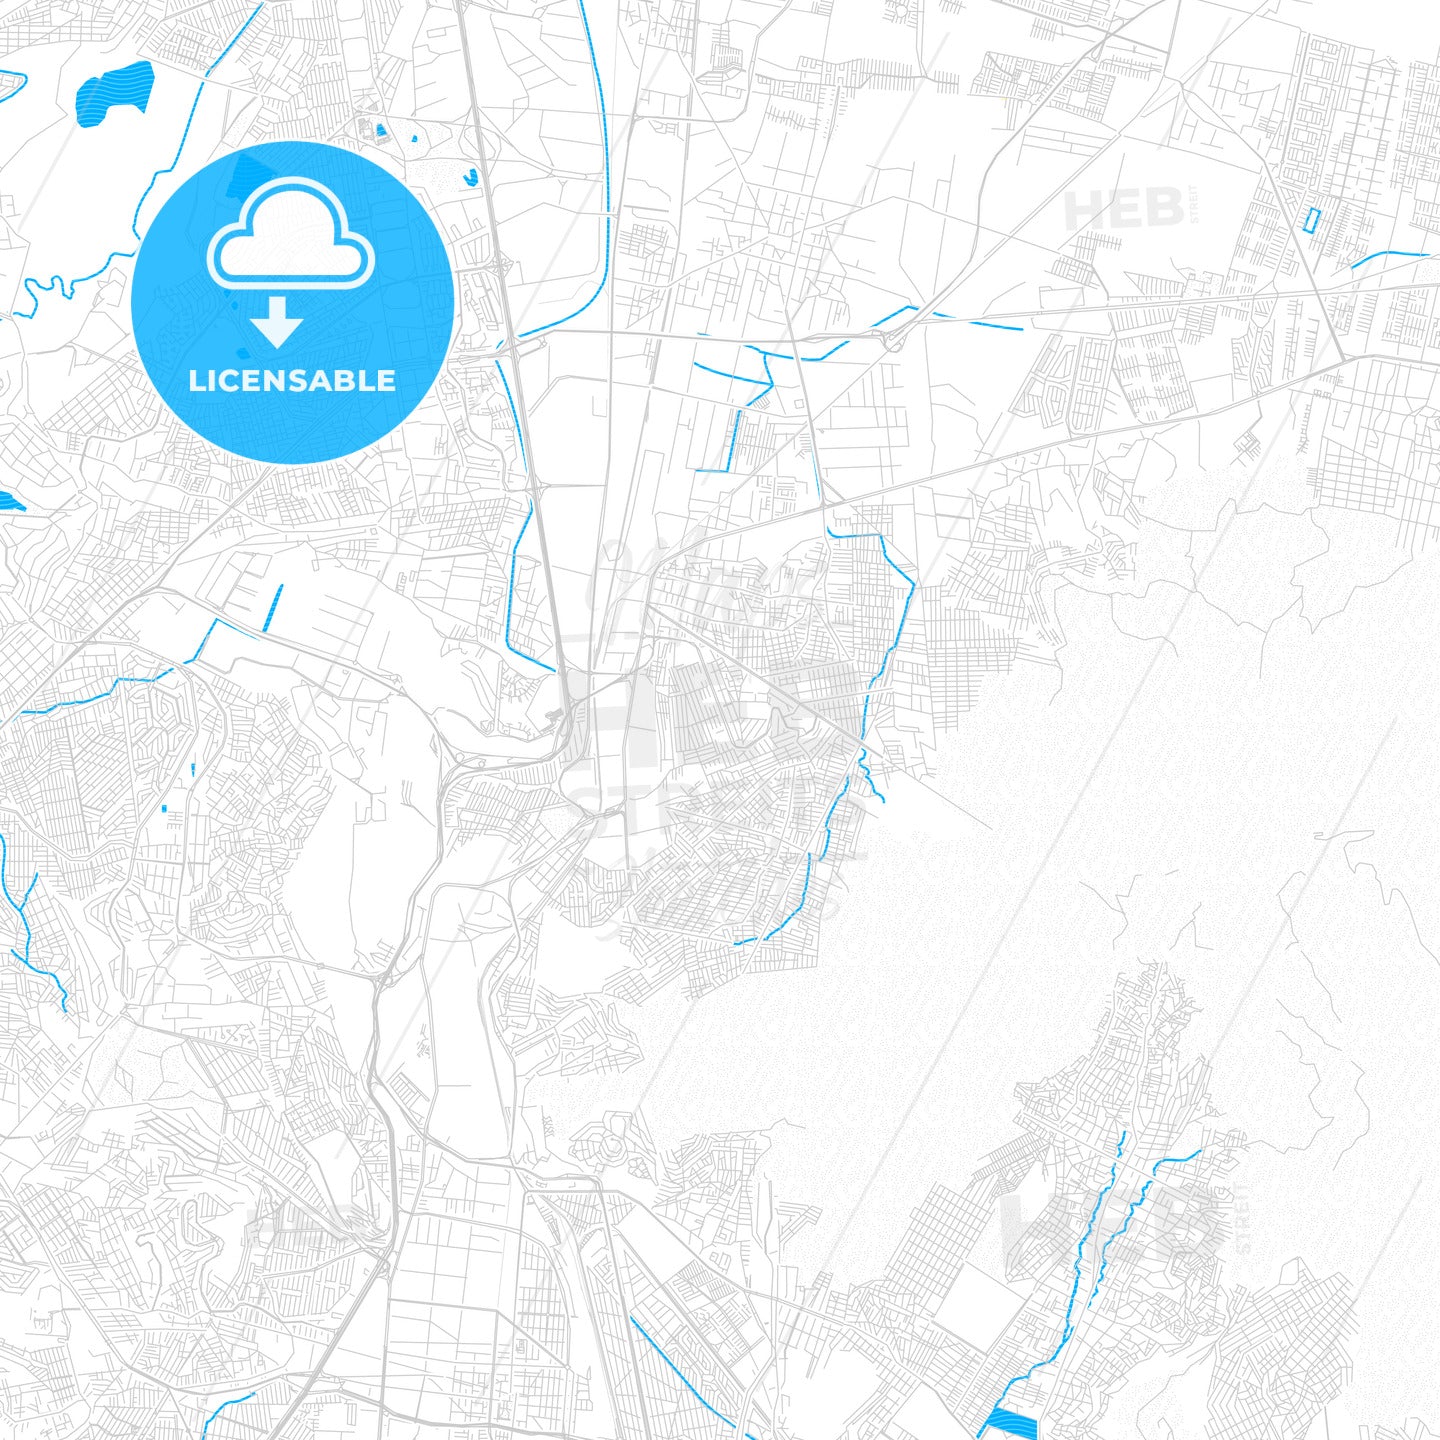 Buenavista, Mexico PDF vector map with water in focus